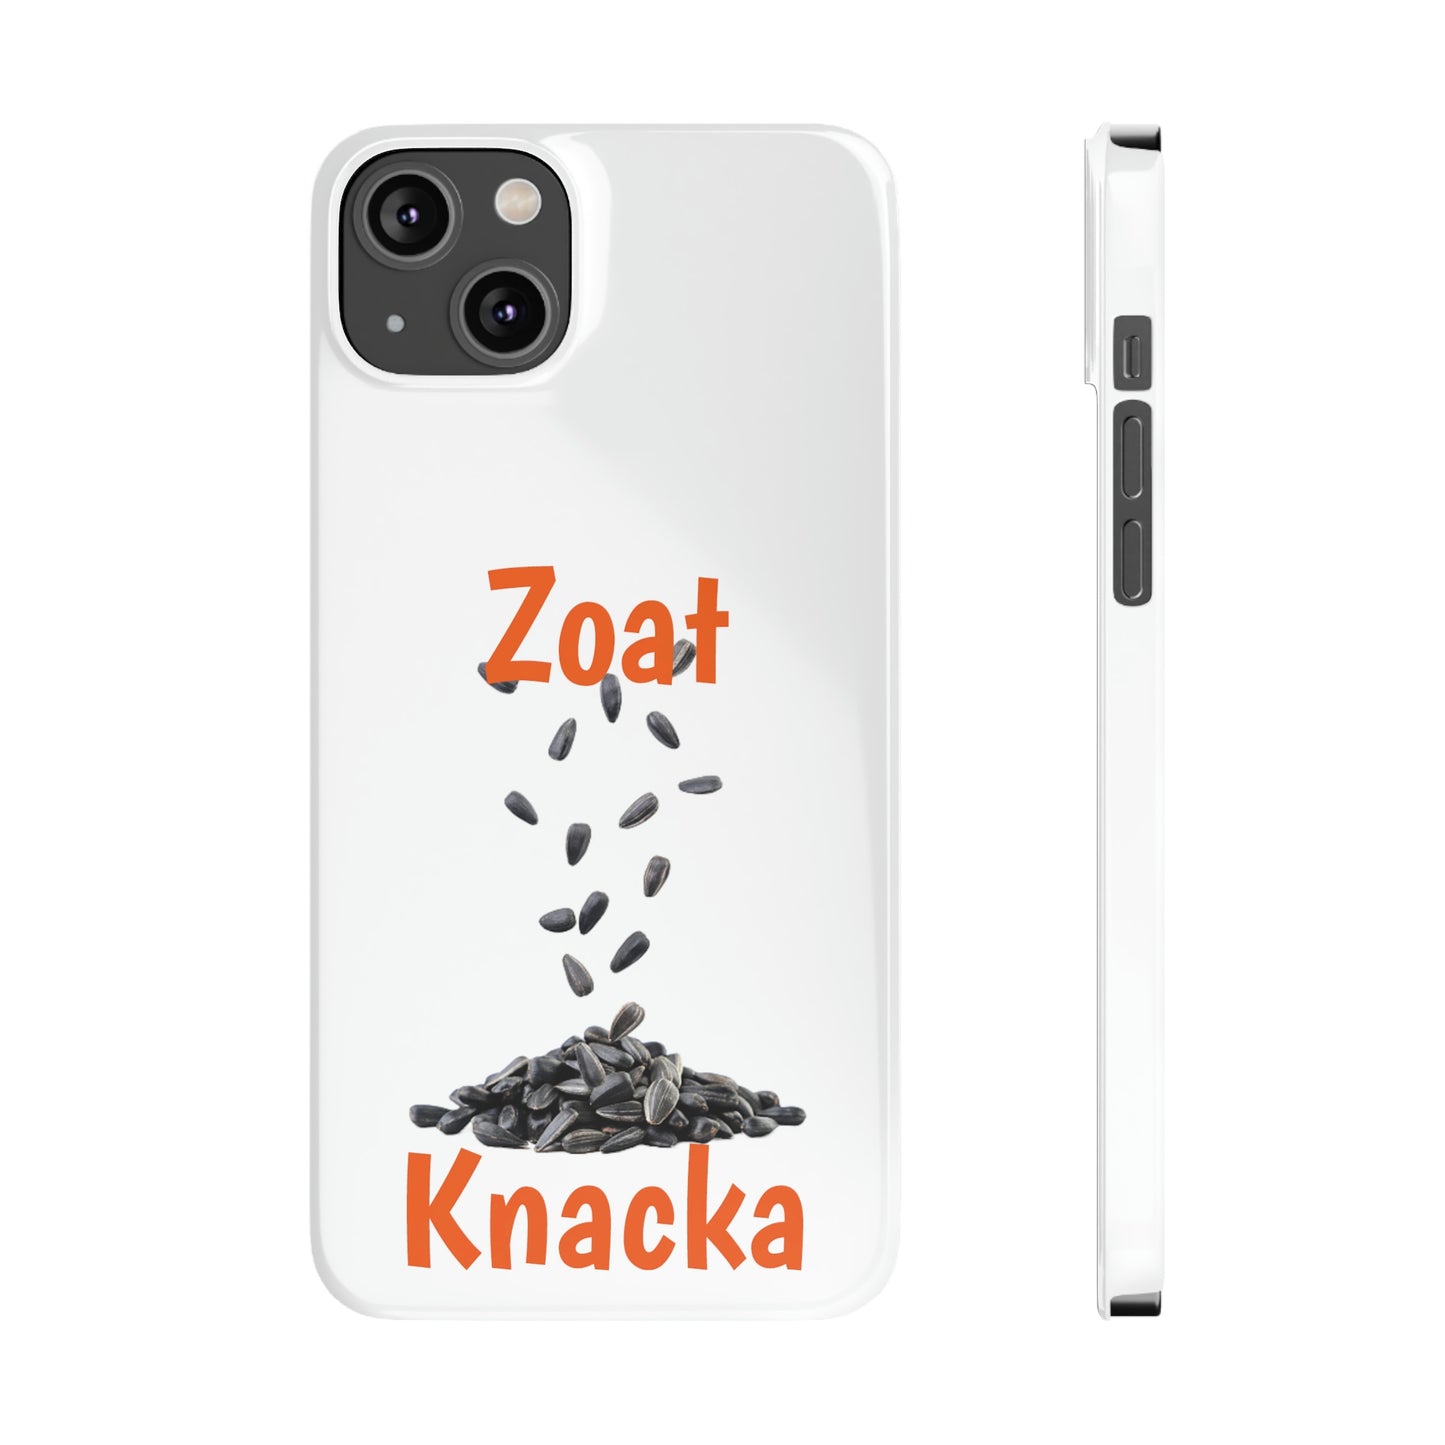 Zoat Knacka iPhone Slim Phone Cases